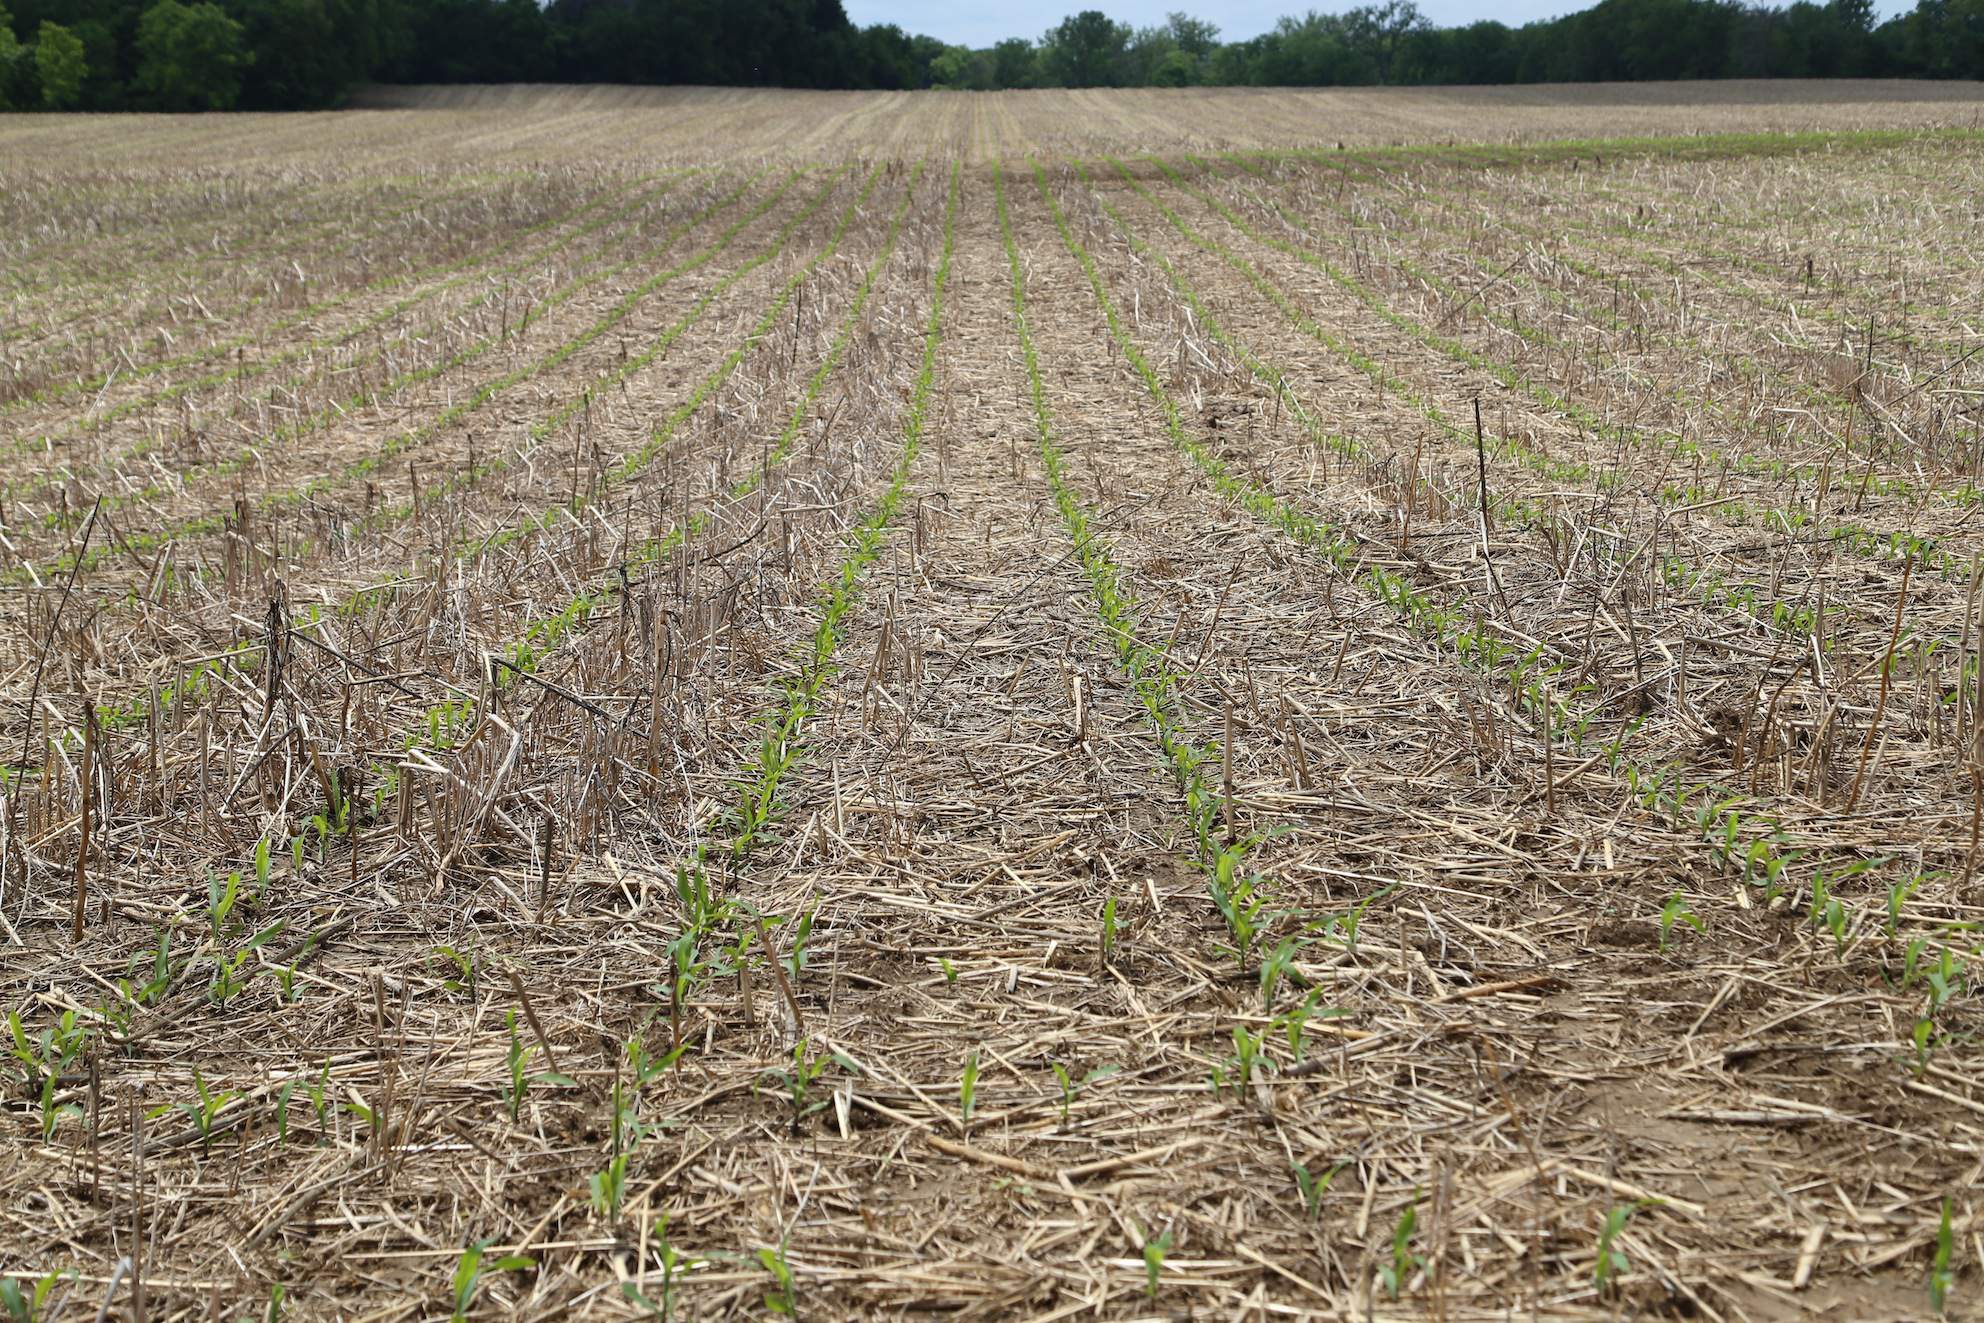 Tak wyglądała kukurydza zasiana na polu z mieszaniną poplonów po pszenicy, bez jakiejkolwiek uprawy na wiosnę.